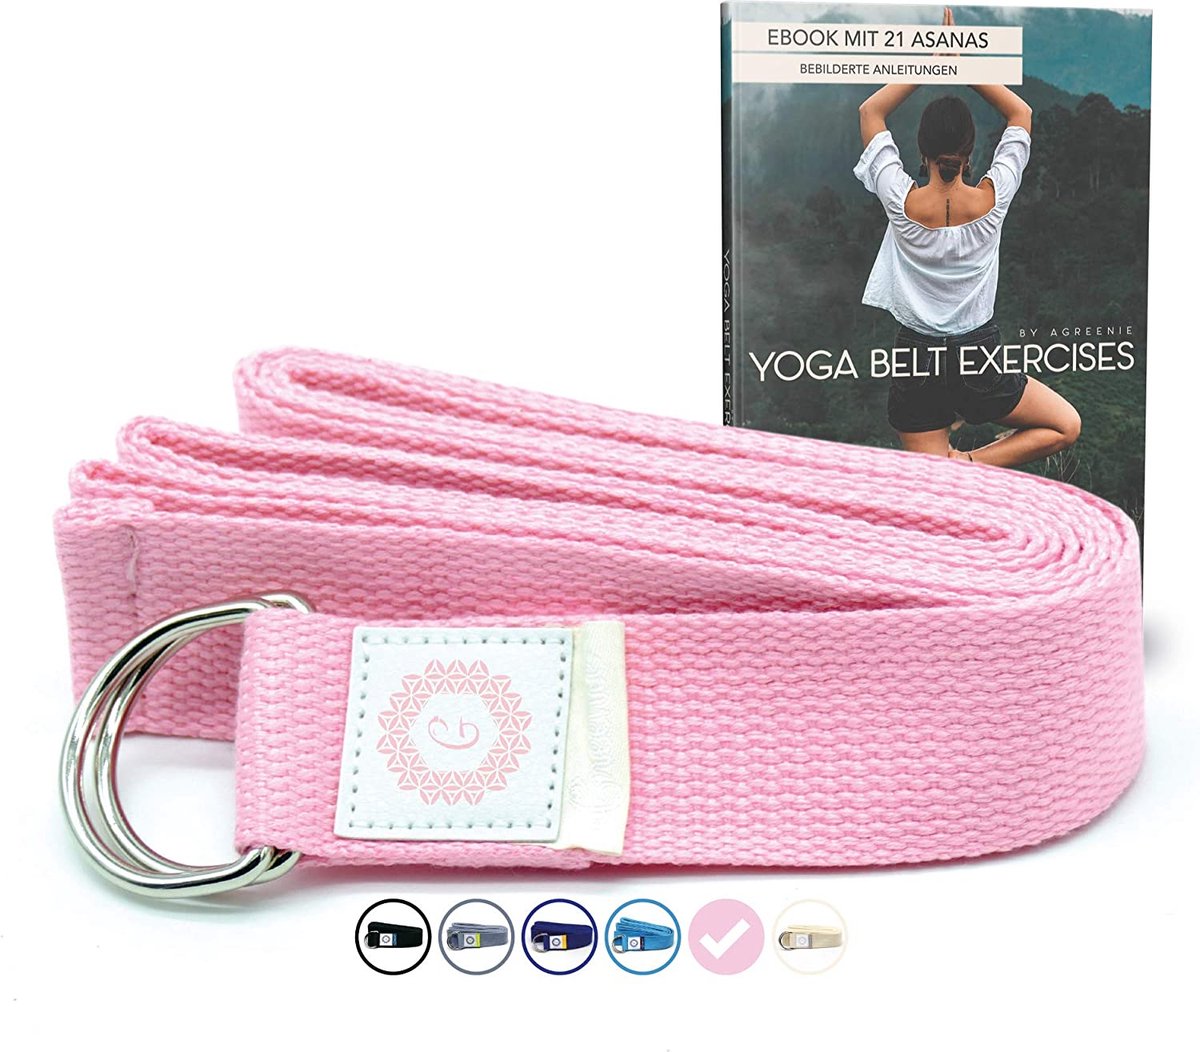 aGreenie Premium Yoga Riemen van 100% katoen - 240 x 3,8cm / Yoga Strap voor een intensievere stretch / Yoga Riem + gratis trainingsgids - rose